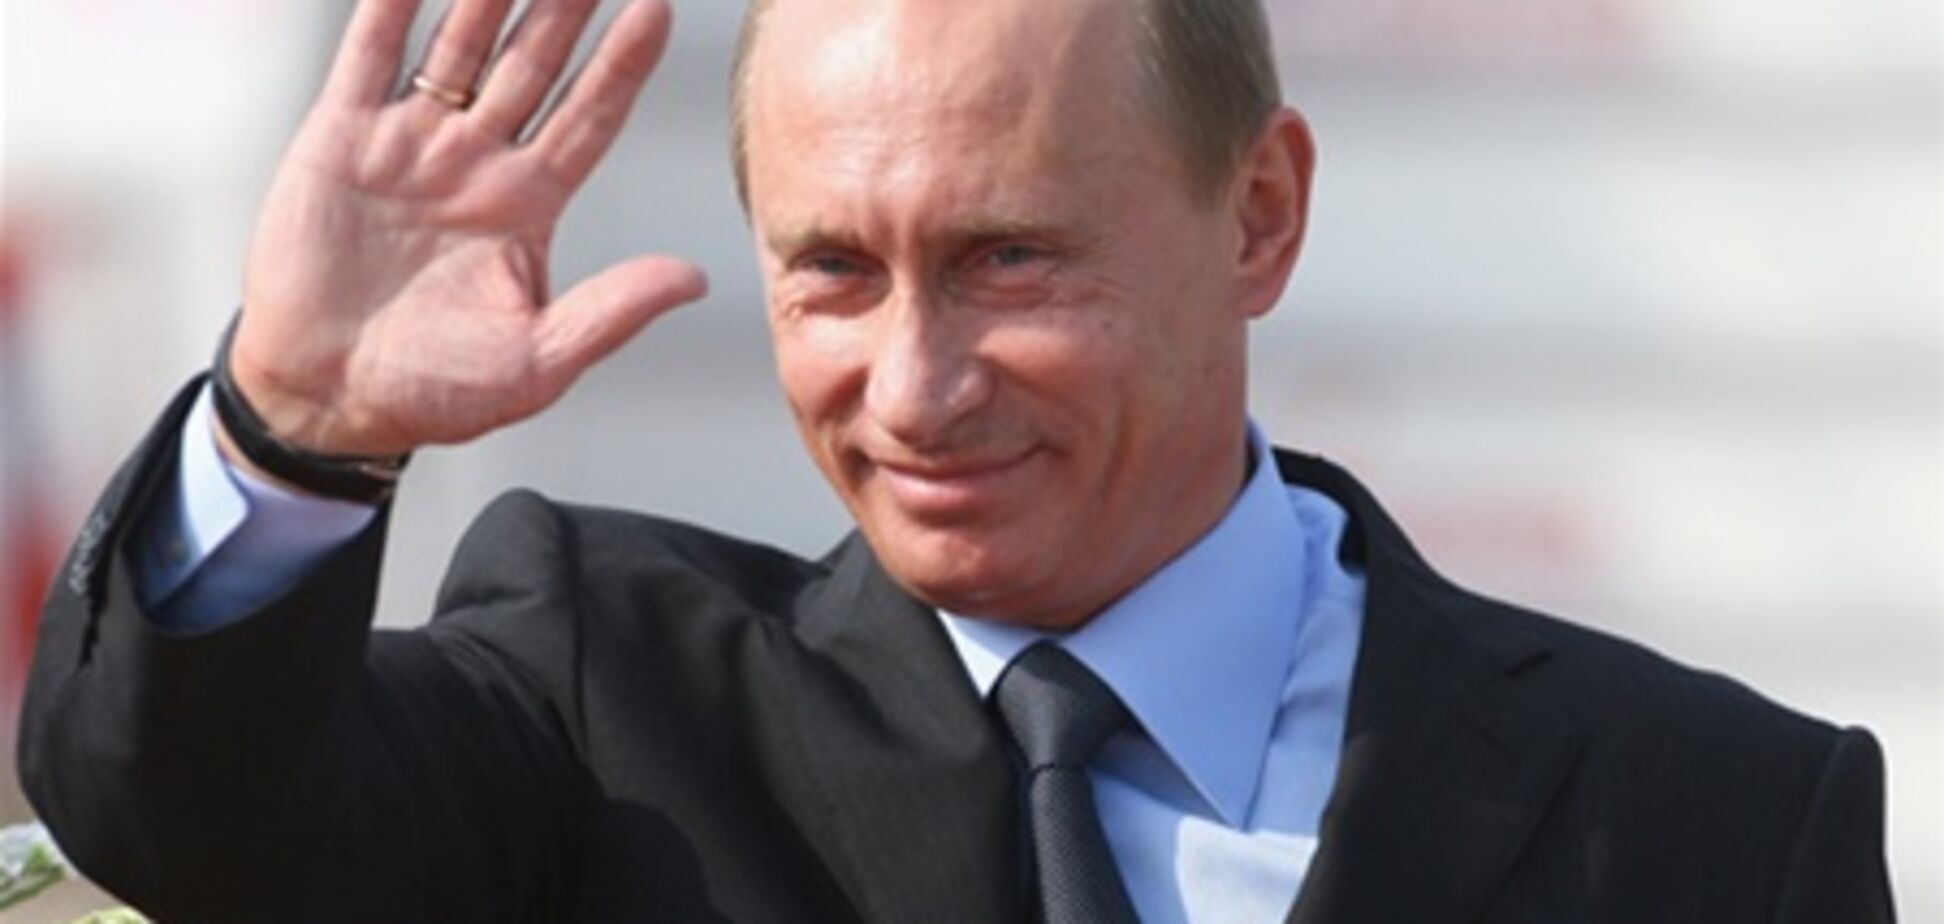 Более 50% россиян не желают переизбрания Путина в 2018 г